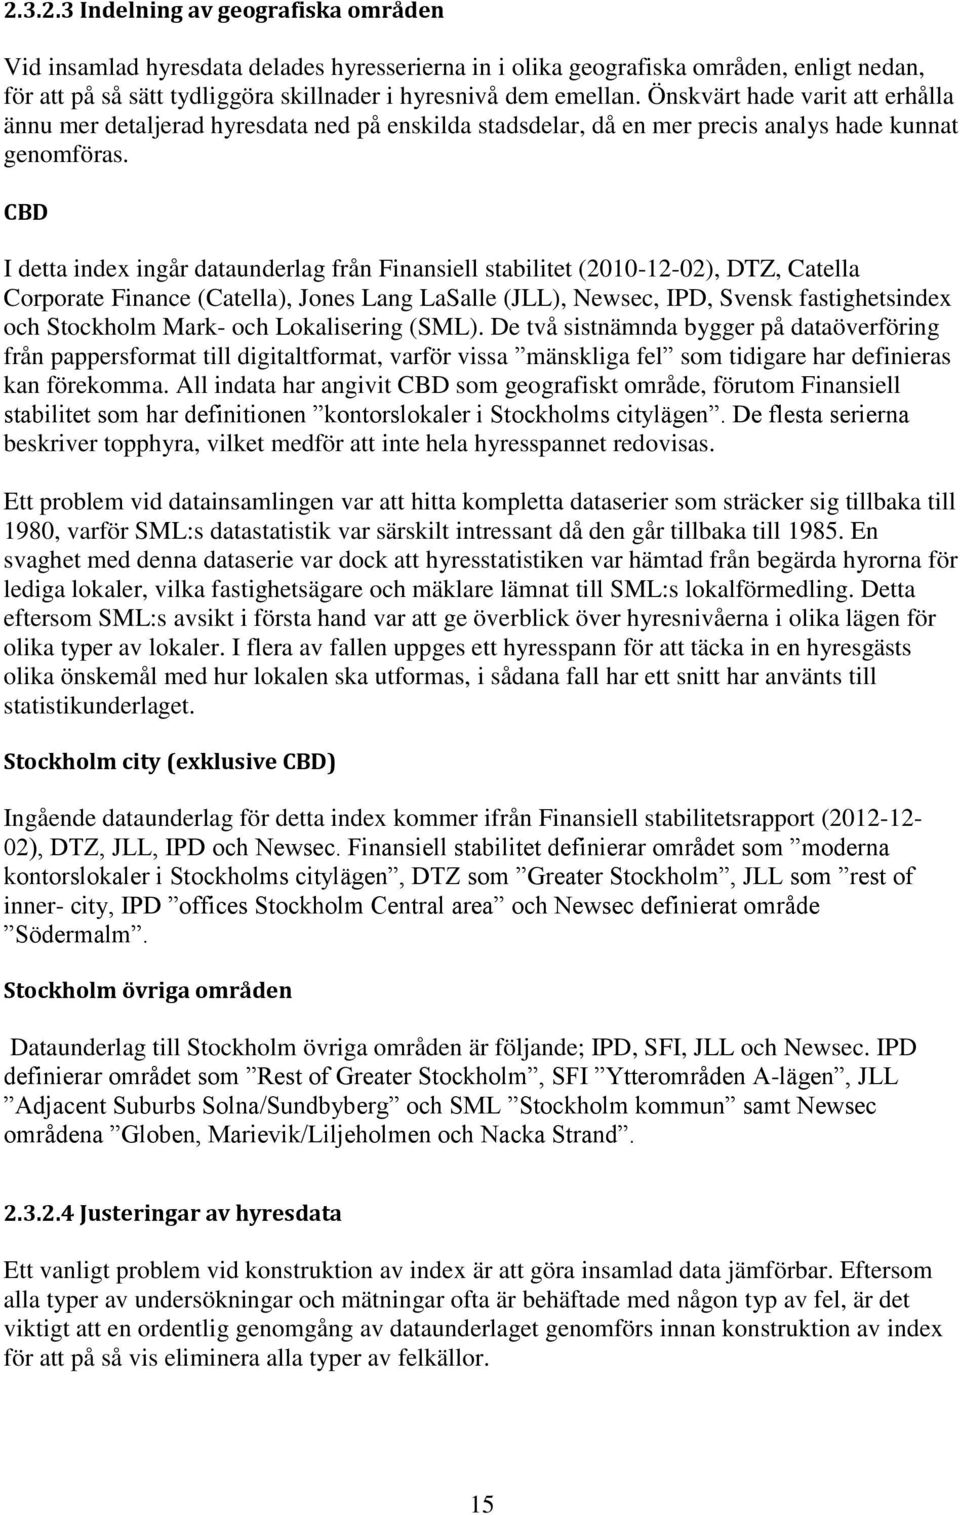 CBD I detta index ingår dataunderlag från Finansiell stabilitet (2010-12-02), DTZ, Catella Corporate Finance (Catella), Jones Lang LaSalle (JLL), Newsec, IPD, Svensk fastighetsindex och Stockholm